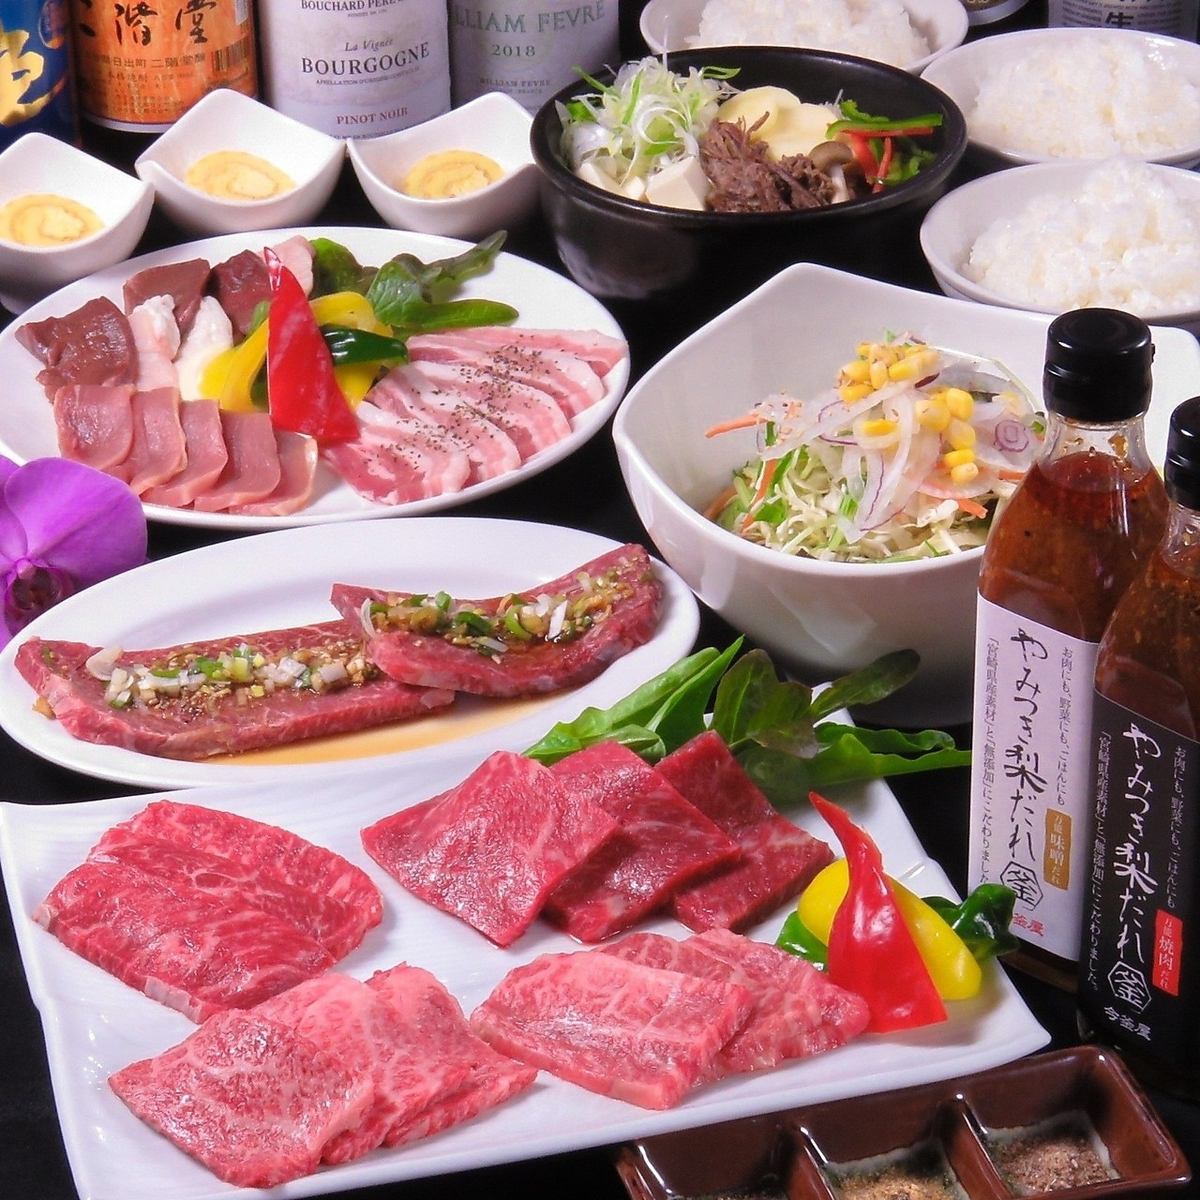 除了宫崎和黑牛肉烤肉之外，还有味噌酱和sundubu等正宗的韩国料理♪